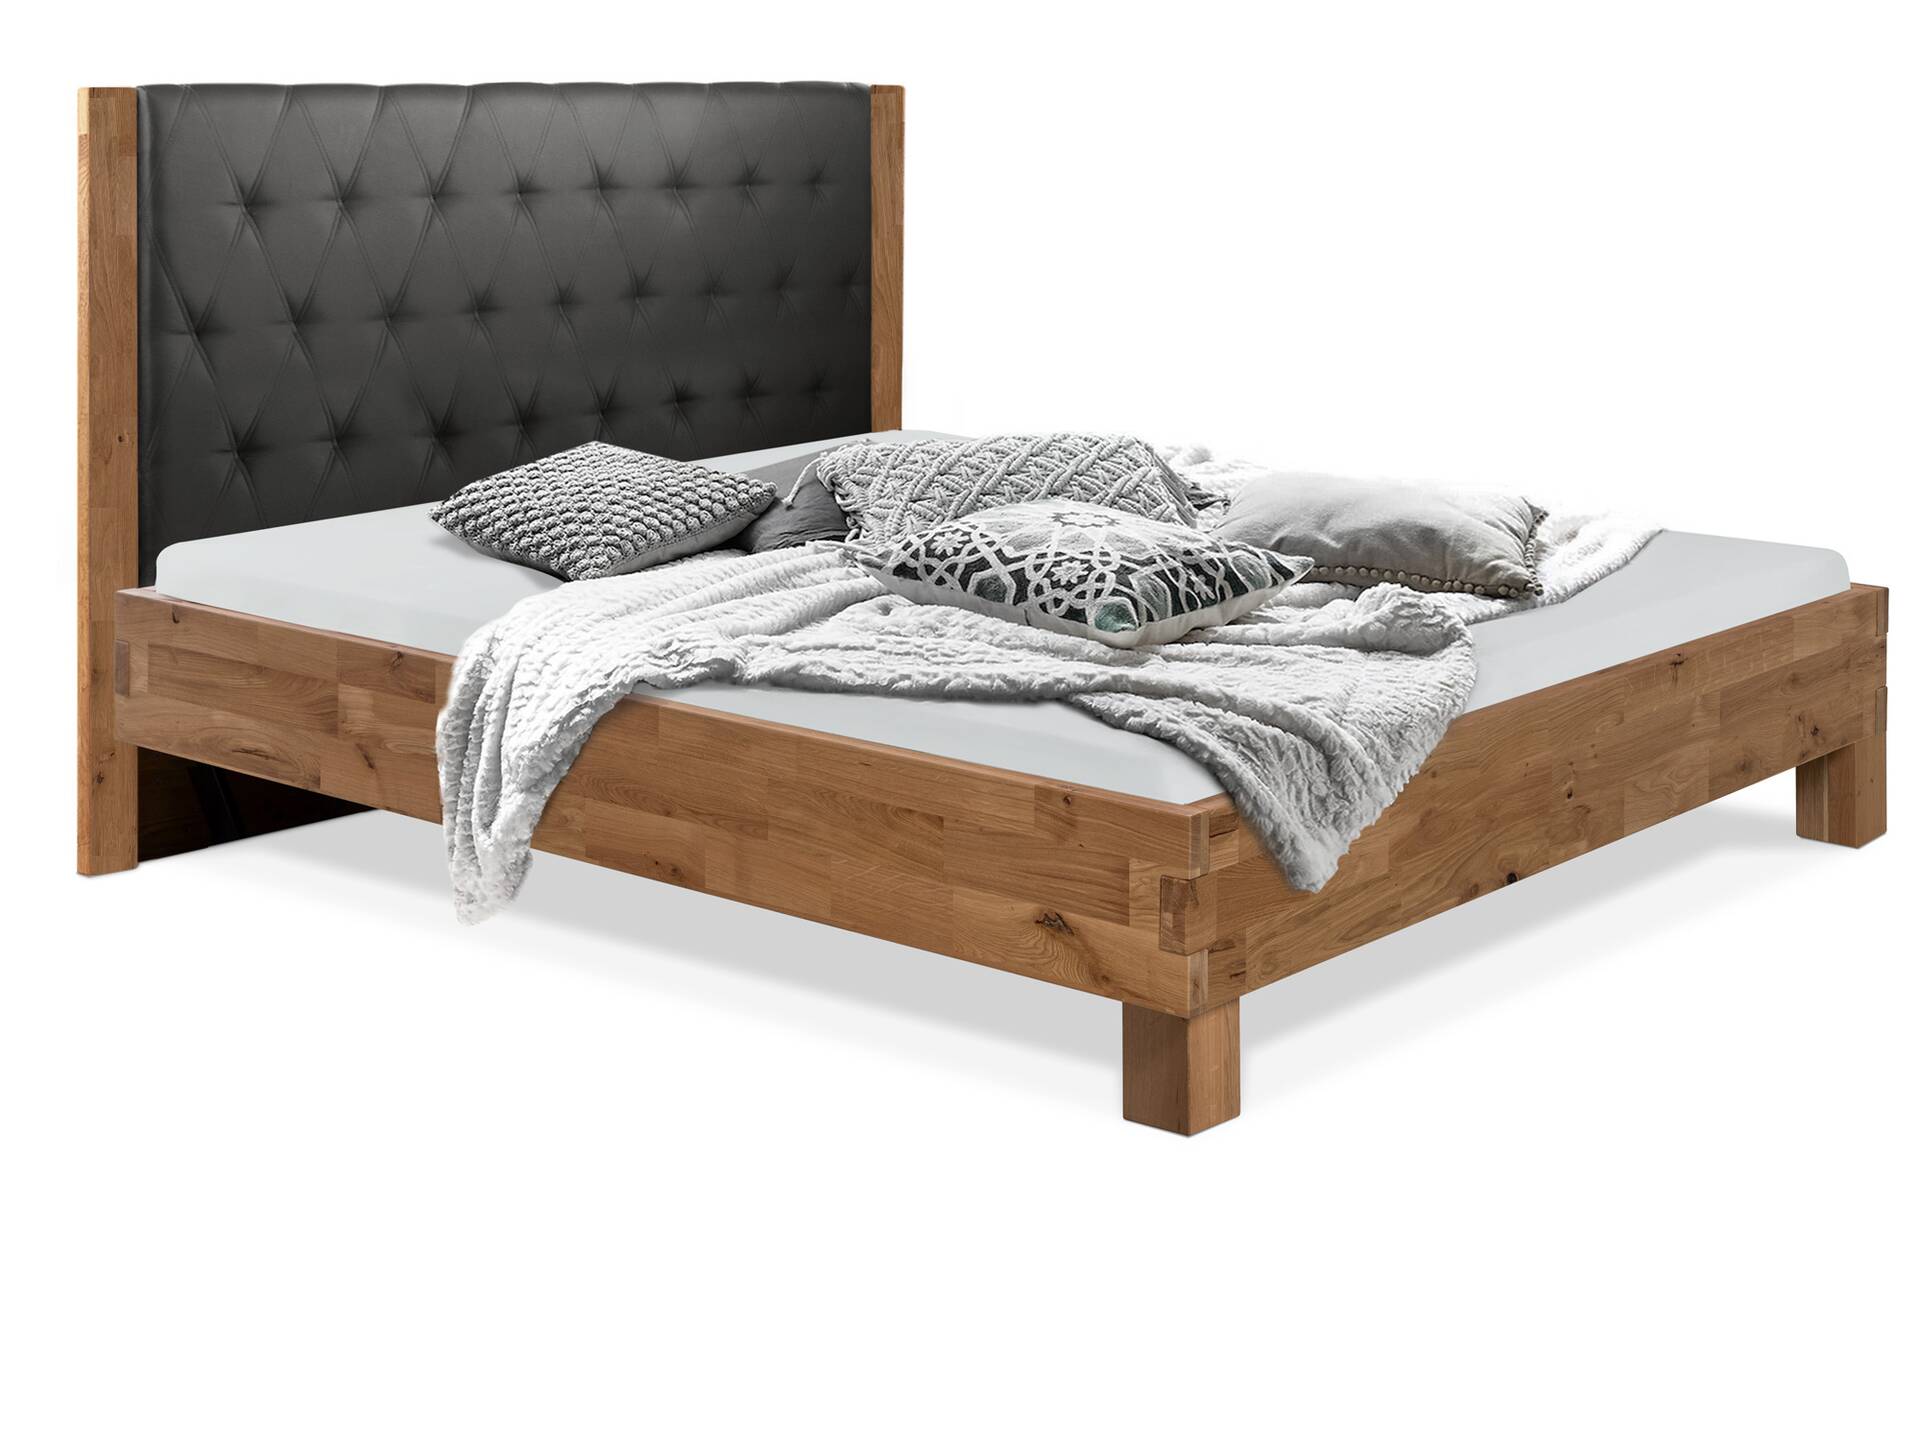 CORDINO 4-Fuß-Bett aus Eiche mit gestepptem Polster-Kopfteil, Material Massivholz 160 x 220 cm | Eiche lackiert | Kunstleder Schwarz | gebürstet